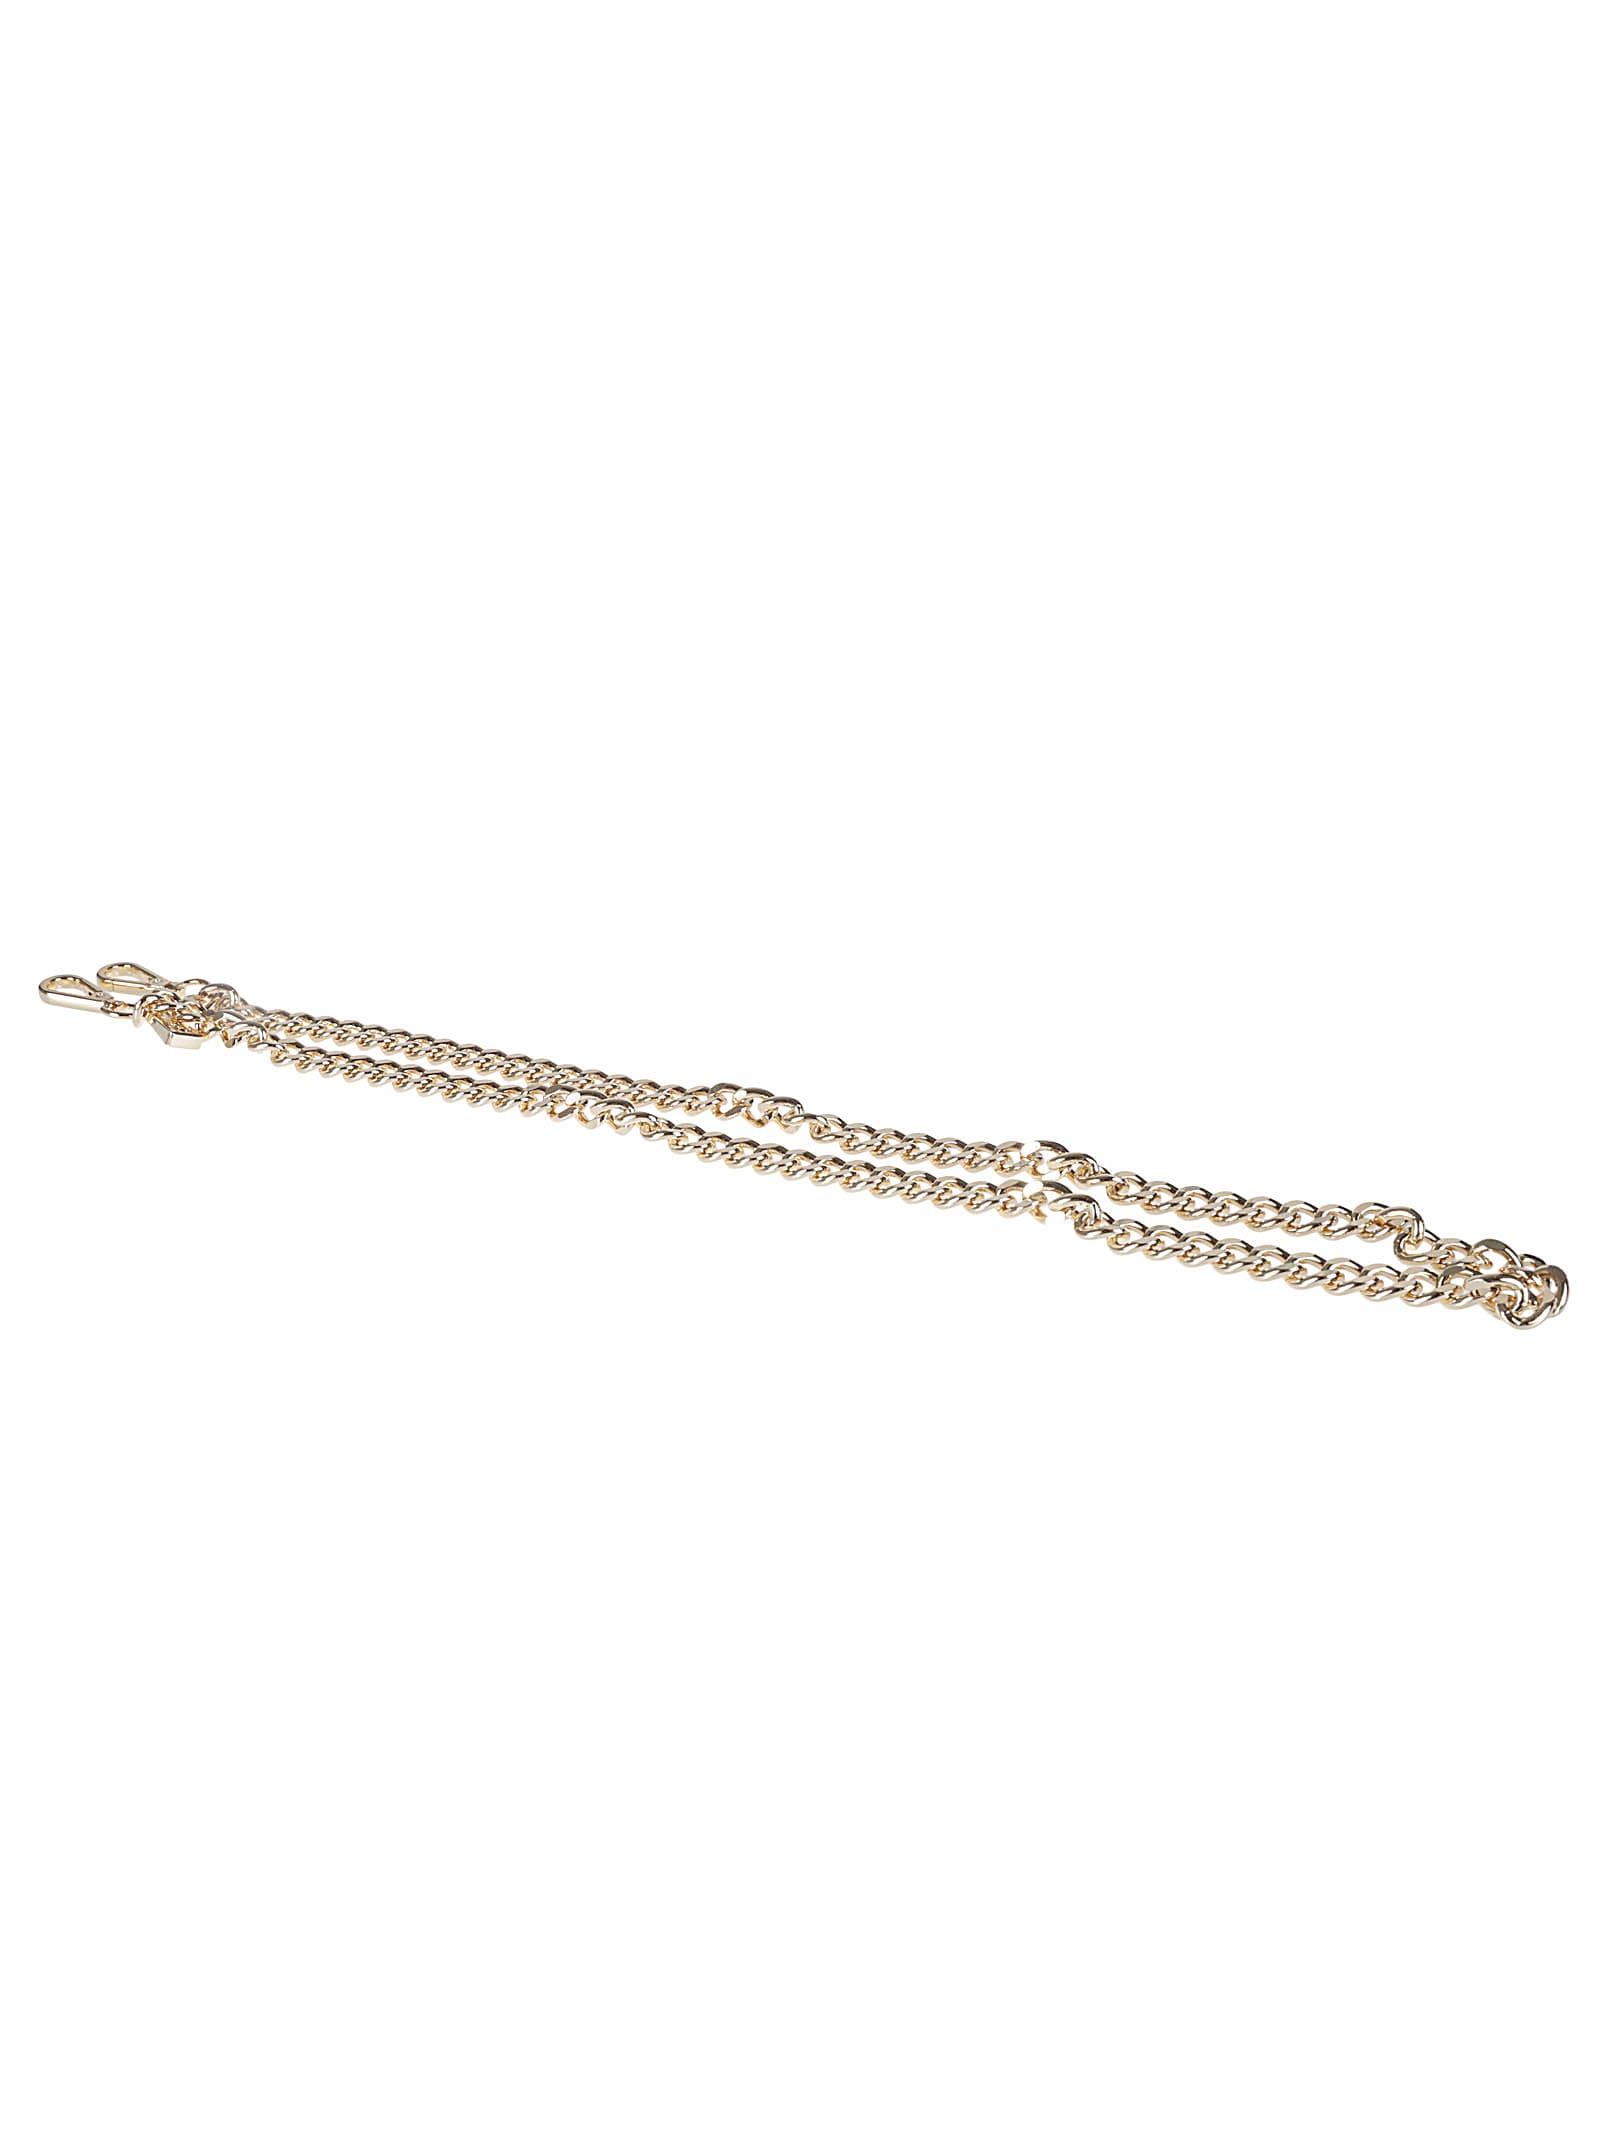 LaMilanesa Chain Classic Necklace